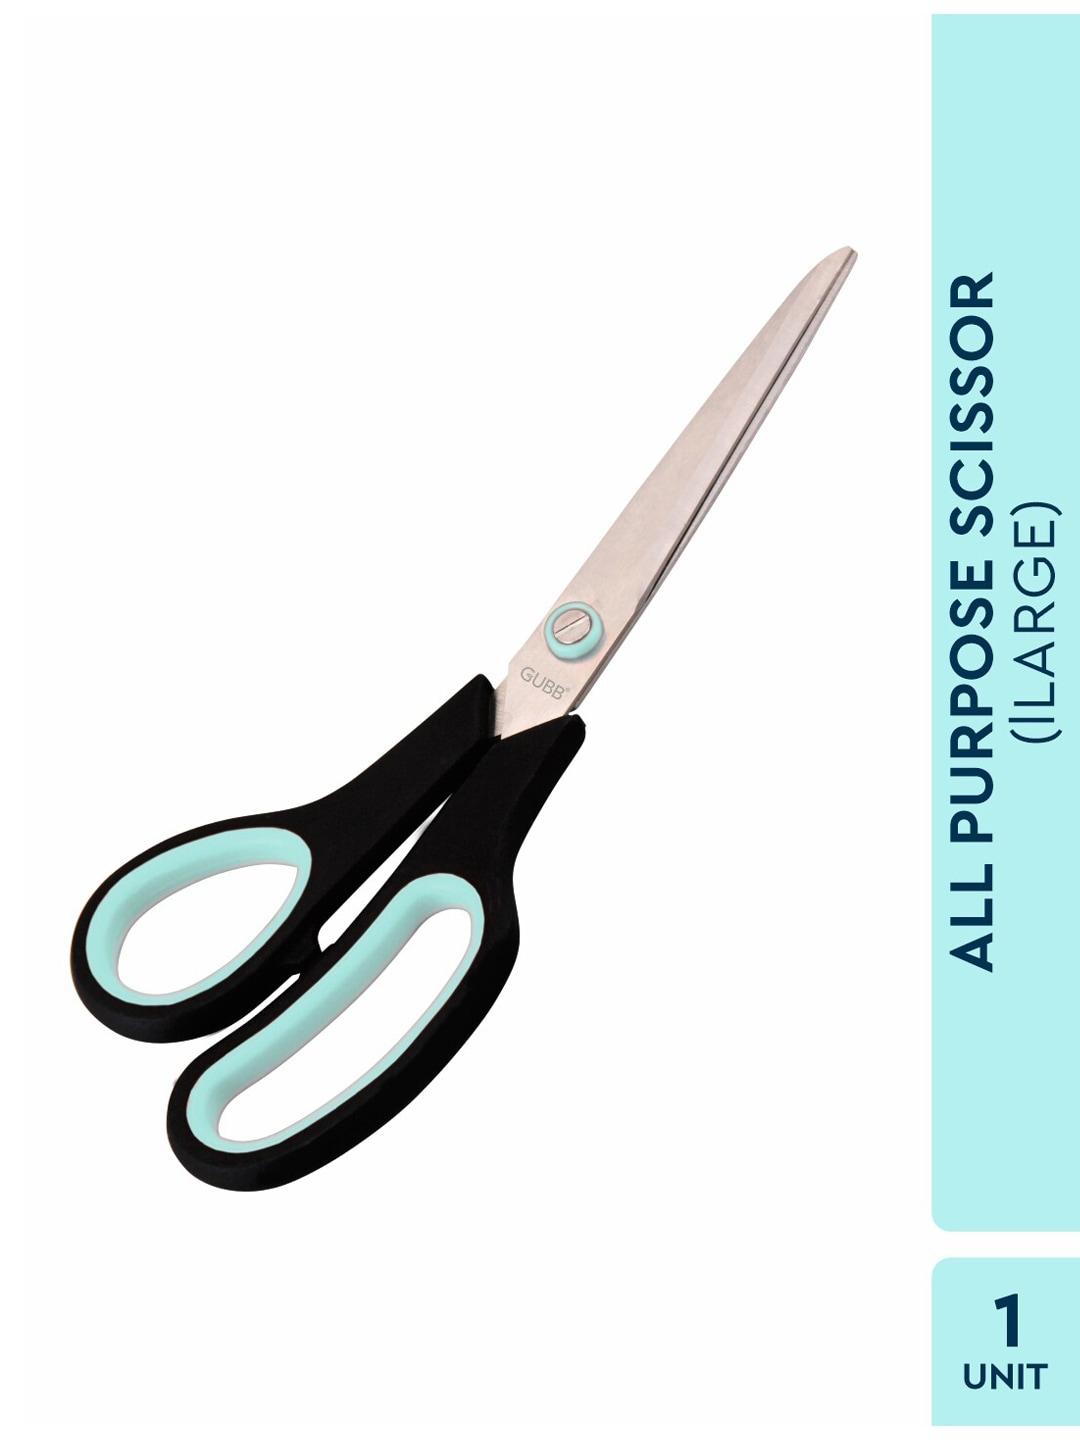 gubb silver-toned all purpose scissor